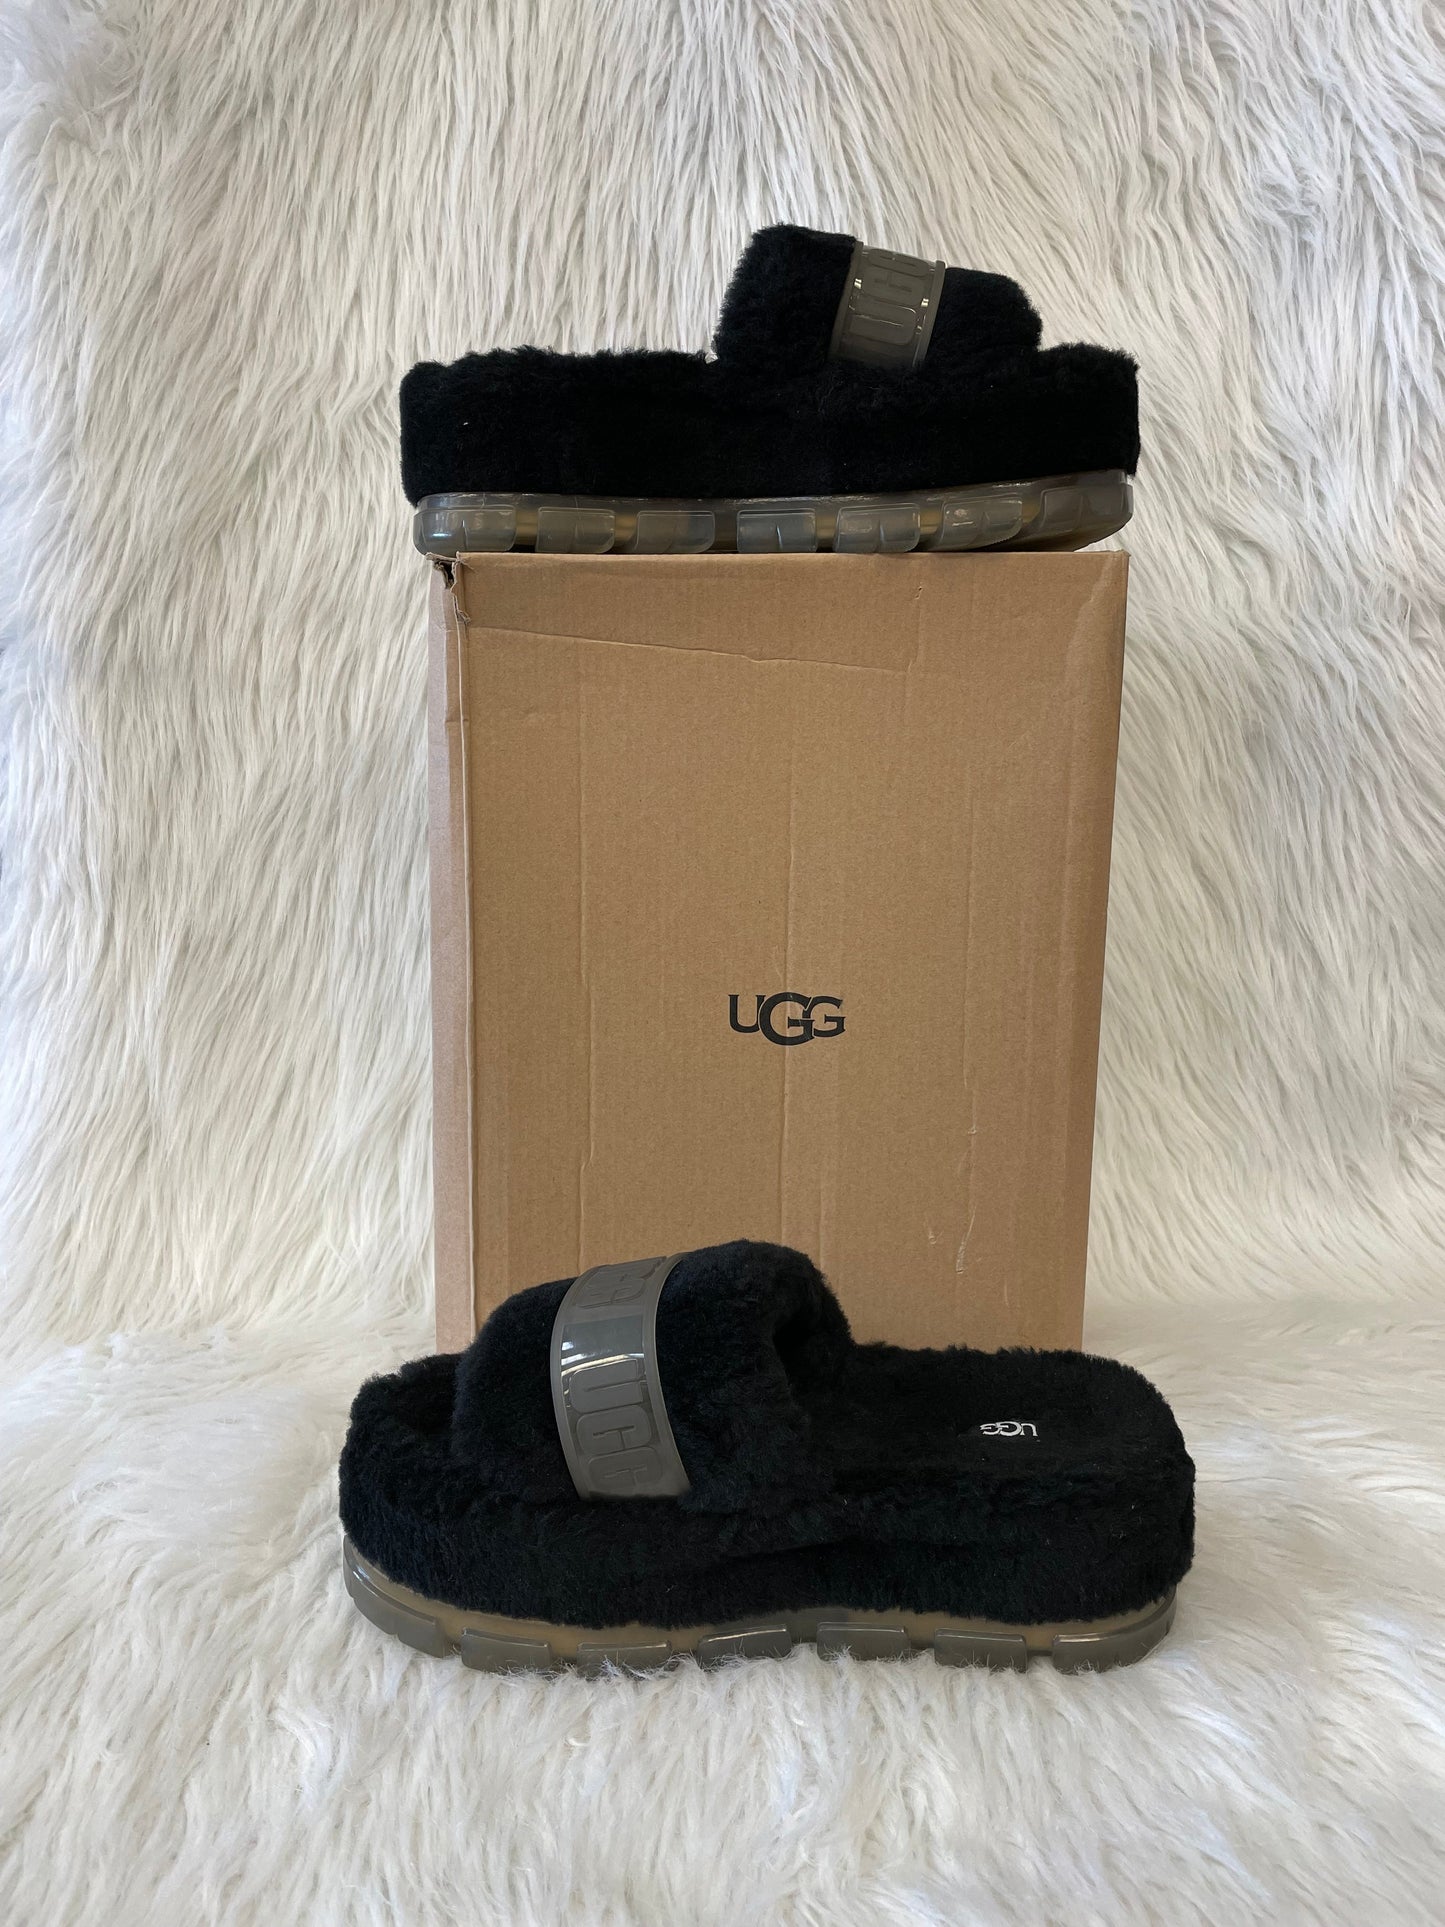 Black Sandals Designer Ugg, Size 10